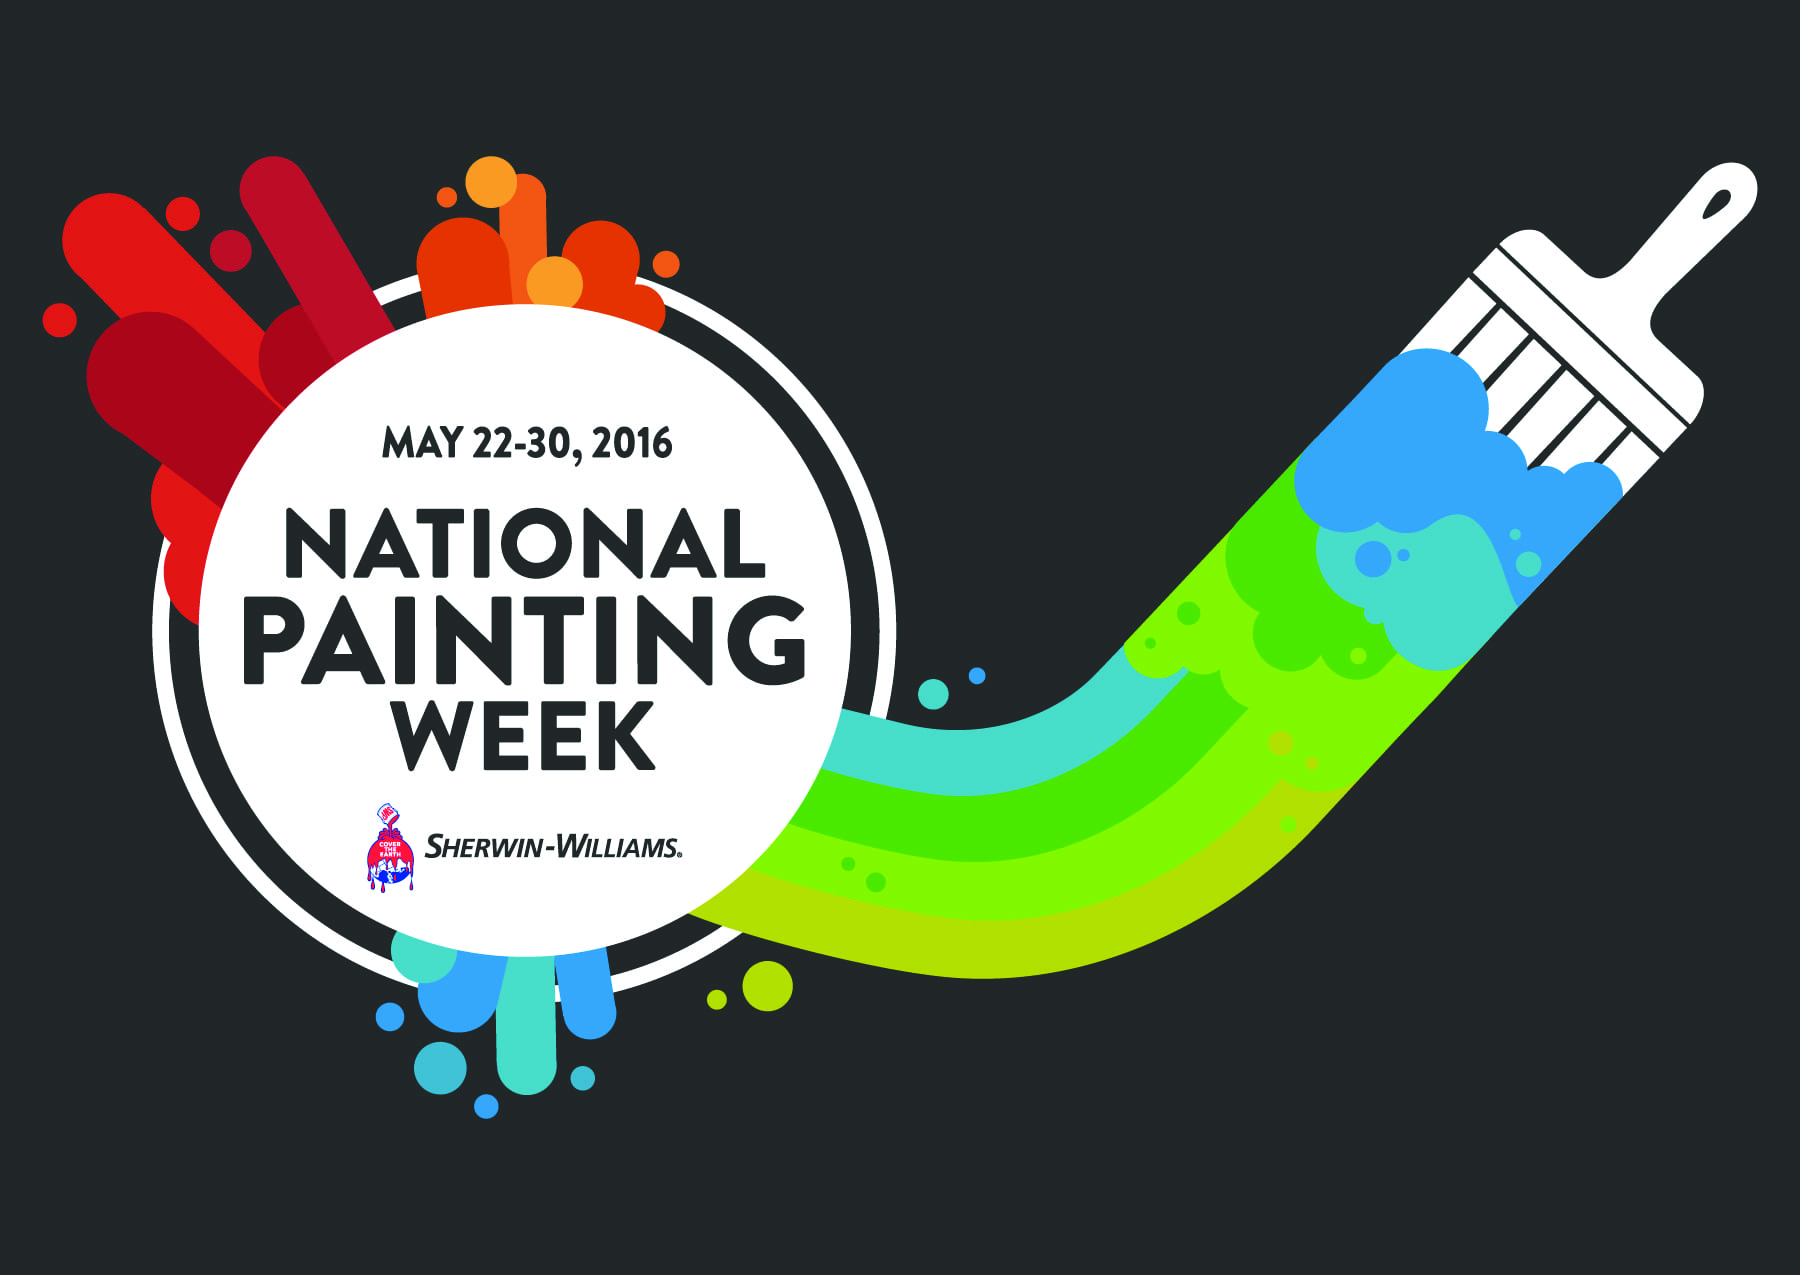 National Painting Week